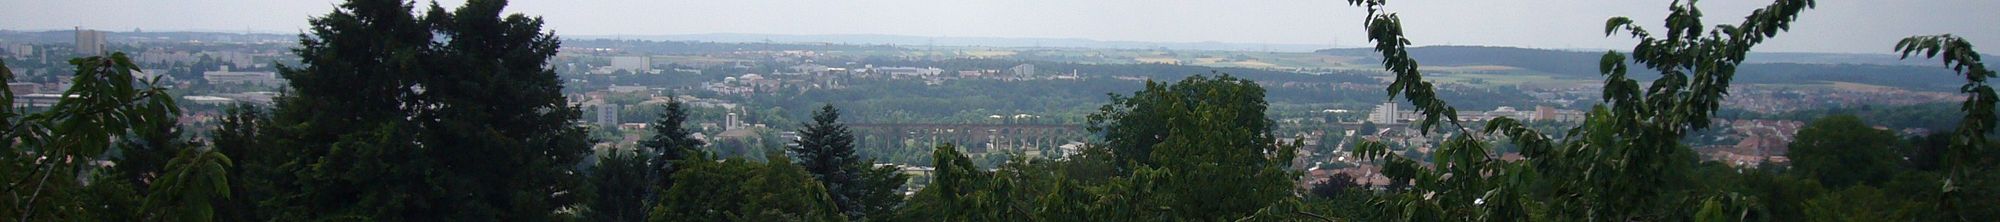 Panoramablick auf die Stadt Bietigheim-Bissingen von der Aussichtsplatte Lug